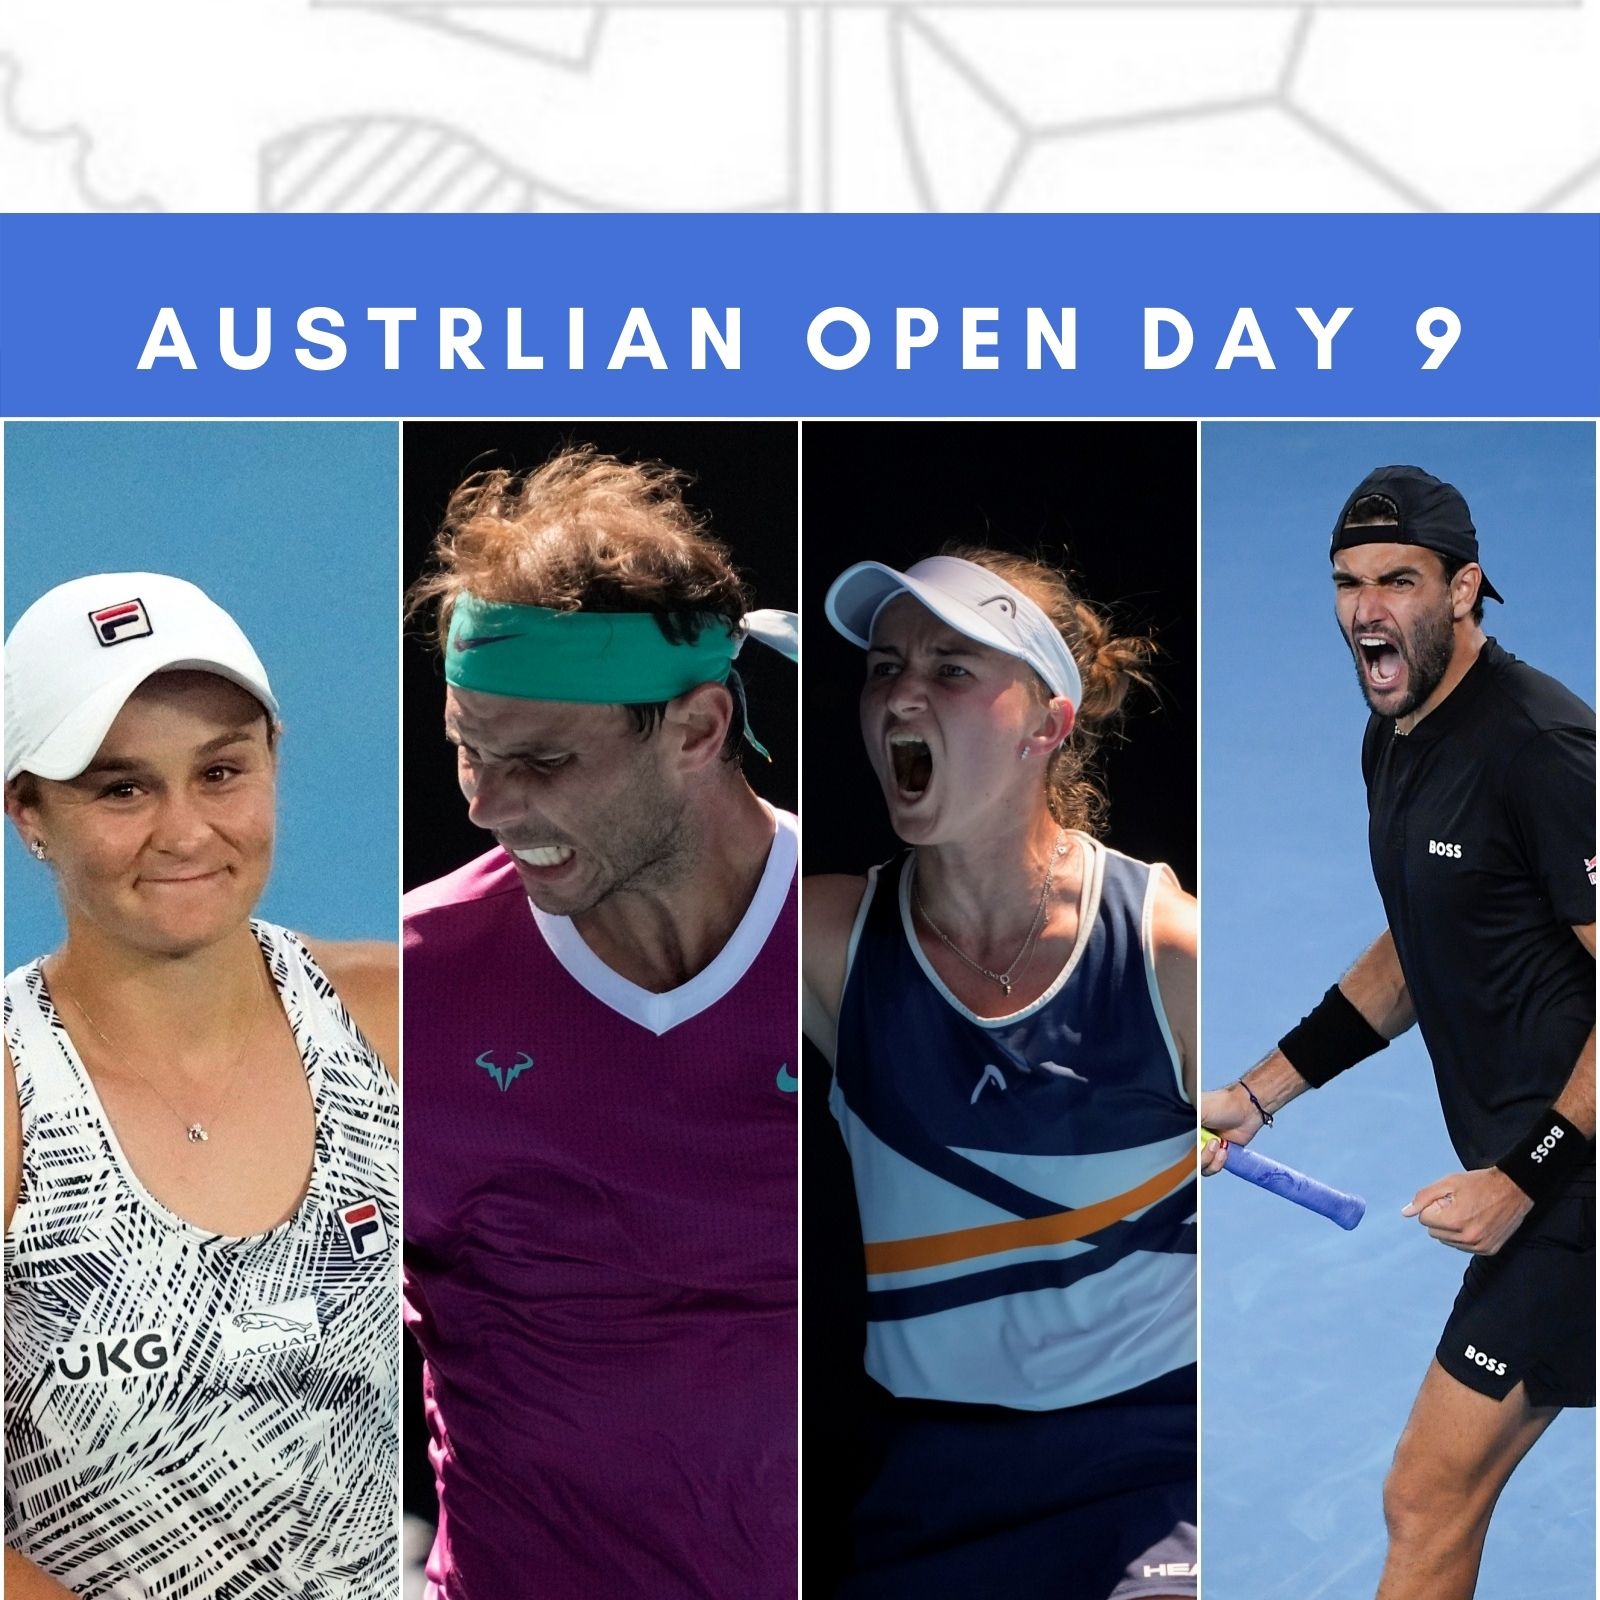 Australian Open 2022, Day 9, Tennis Highlights Rafael Nadal, Ash Barty Enter Semis; Krejcikova, Sania Mirza Knocked Out